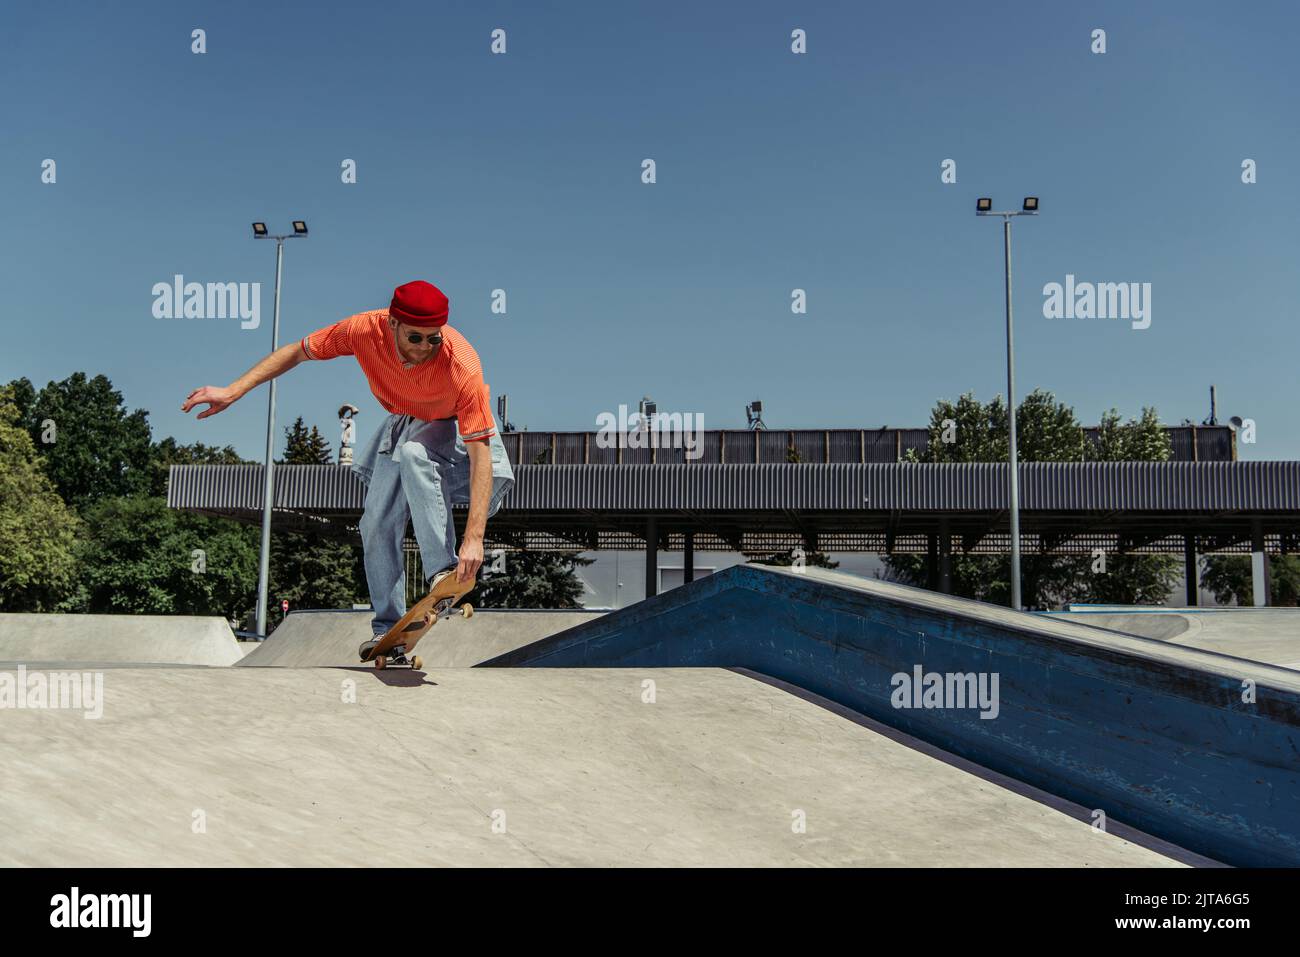 jeune homme en vêtements élégants skate sur la rampe dans le parc Banque D'Images